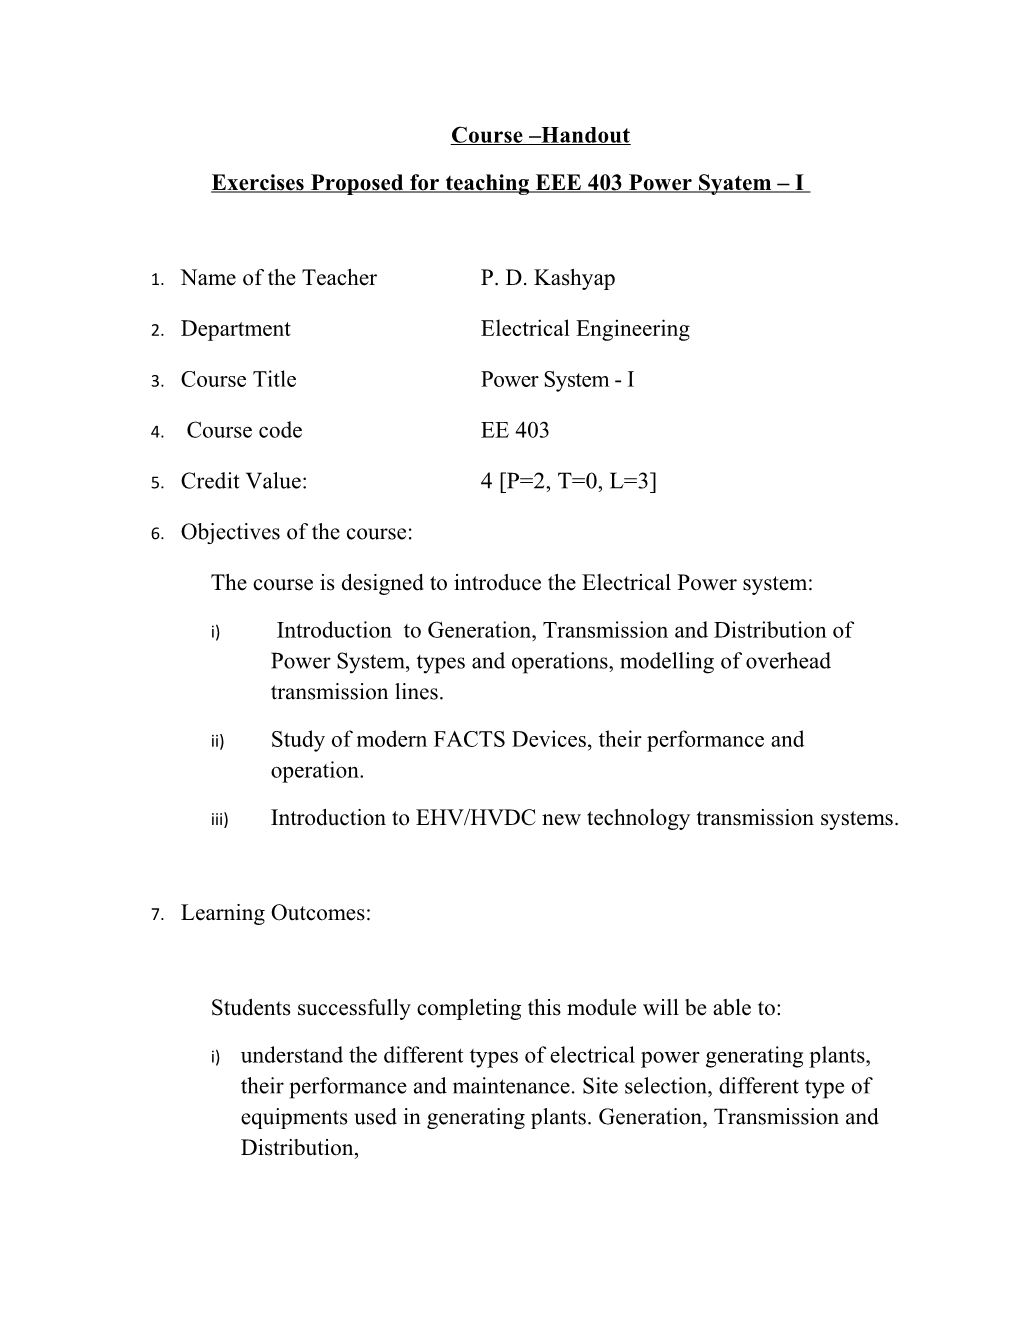 Exercises Proposed for Teaching EEE 403 Power Syatem I